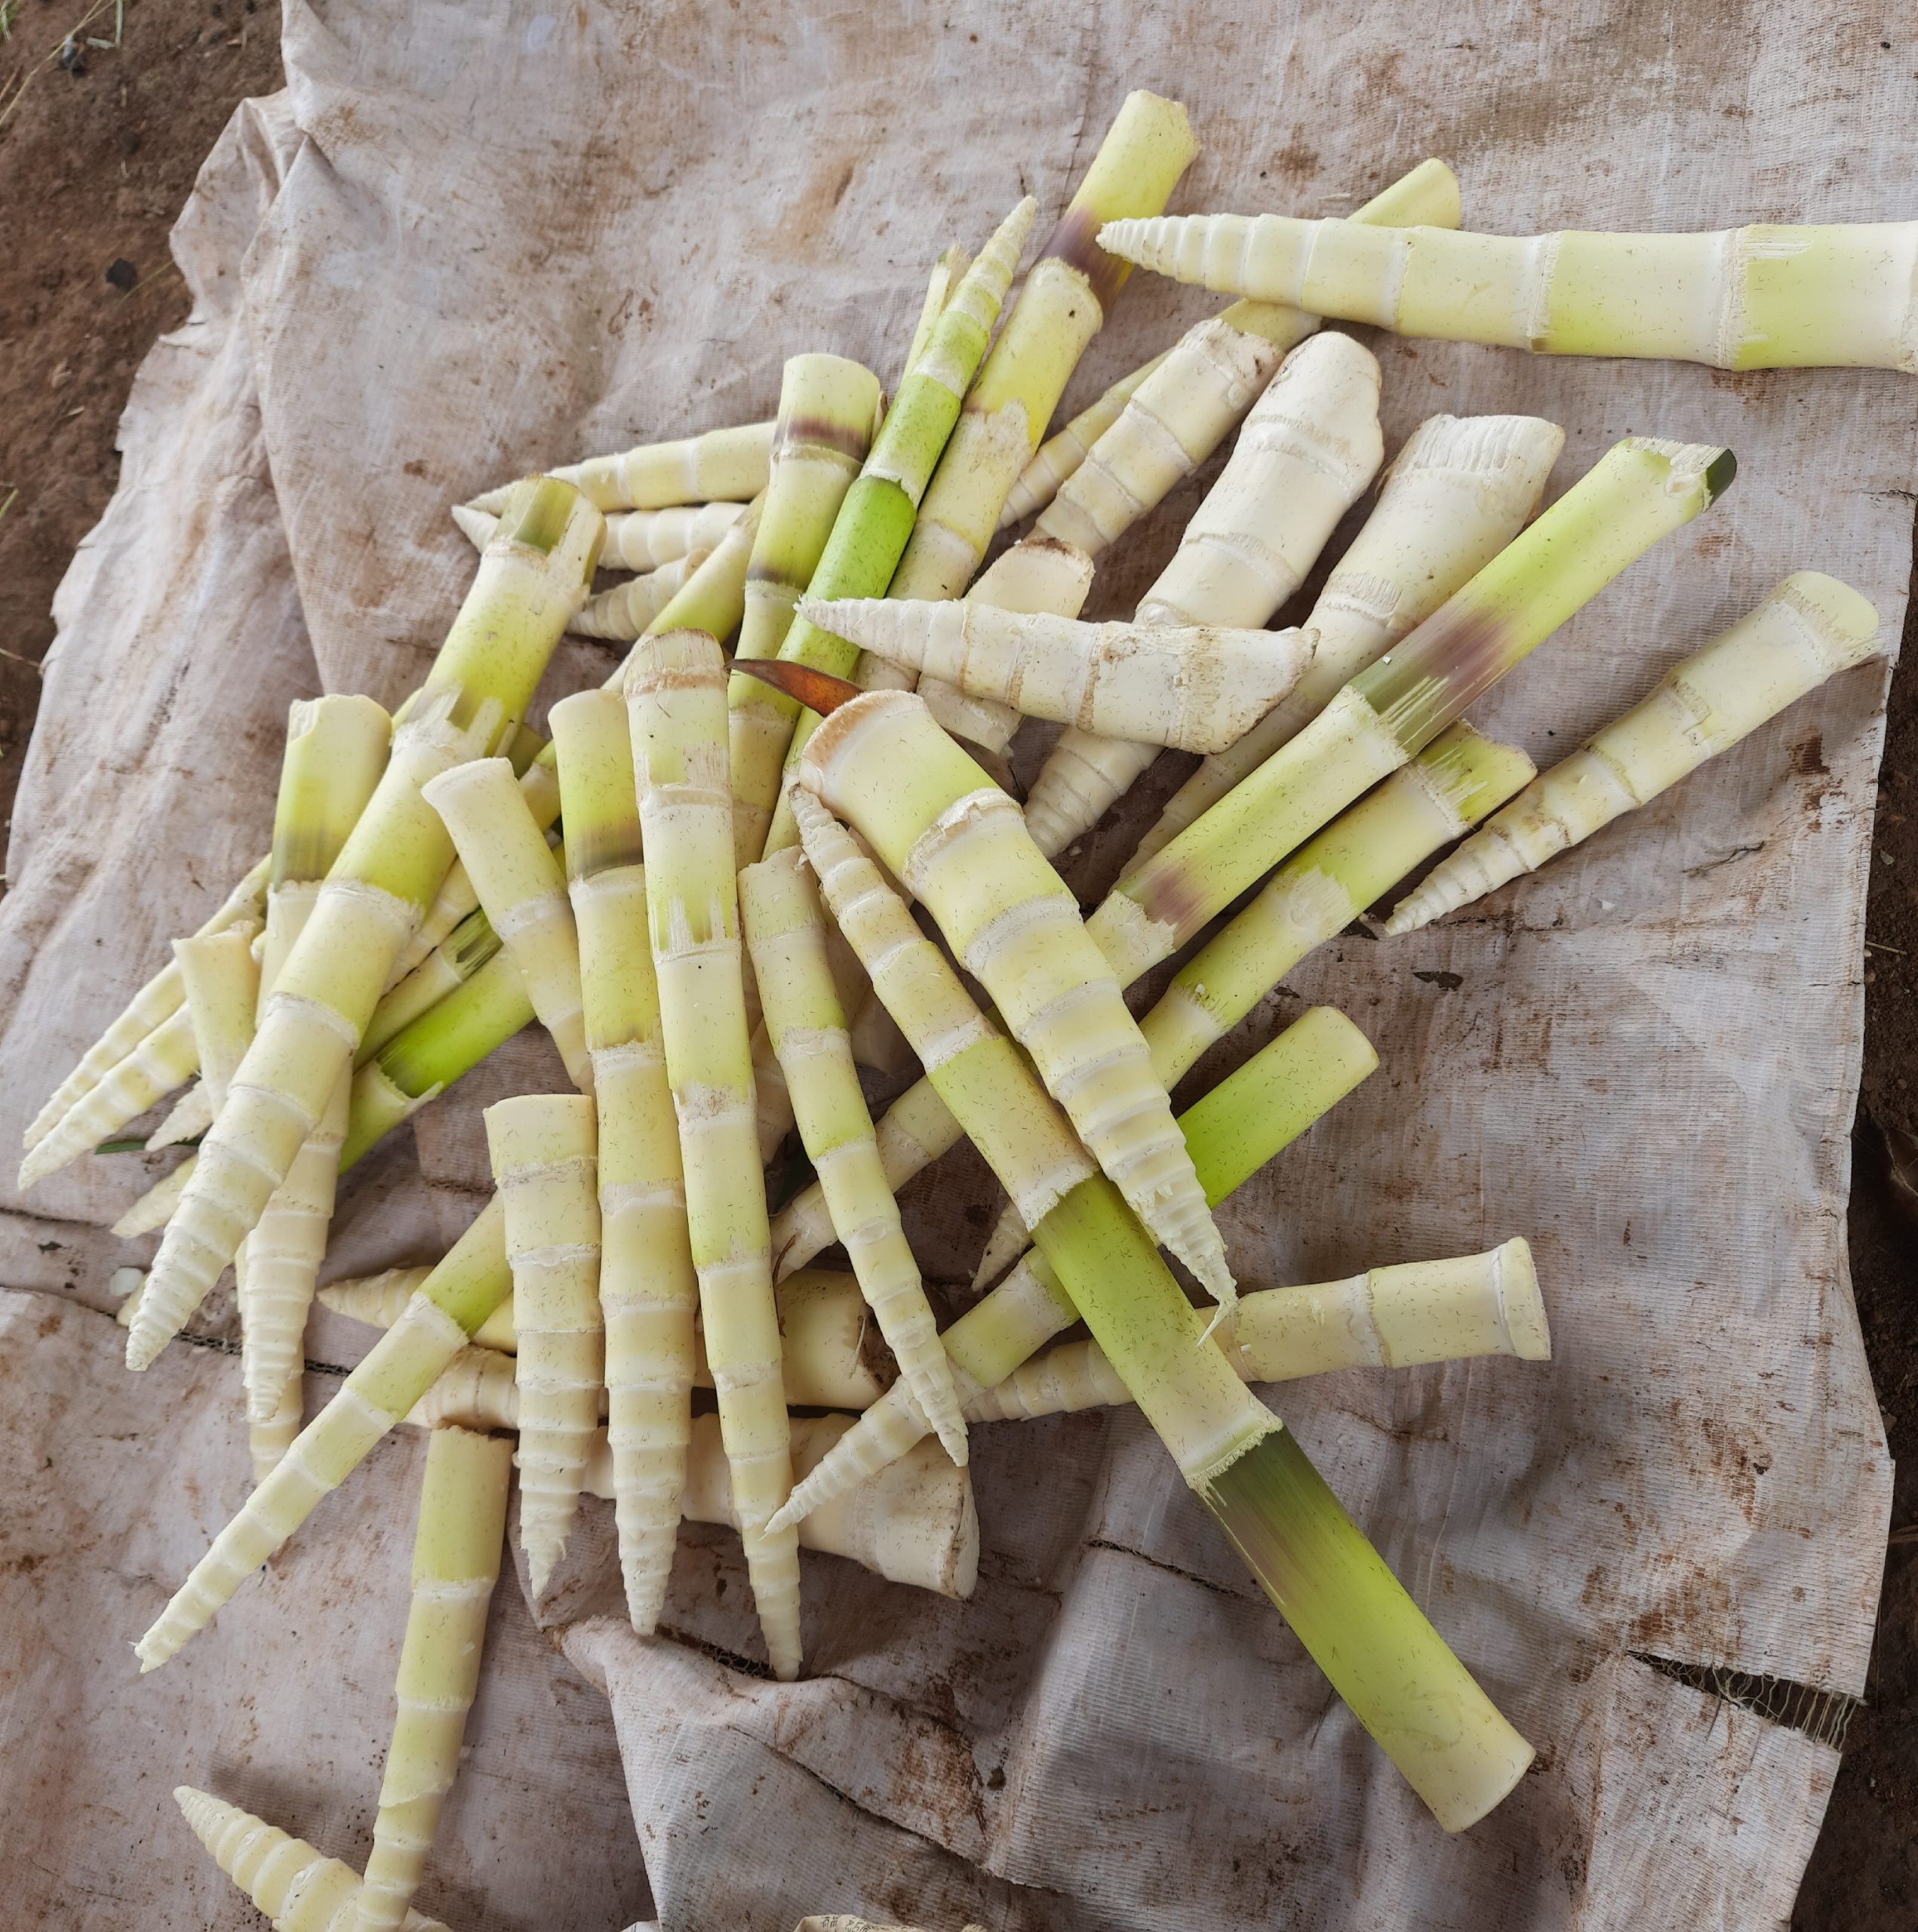 Edible bamboo shoots